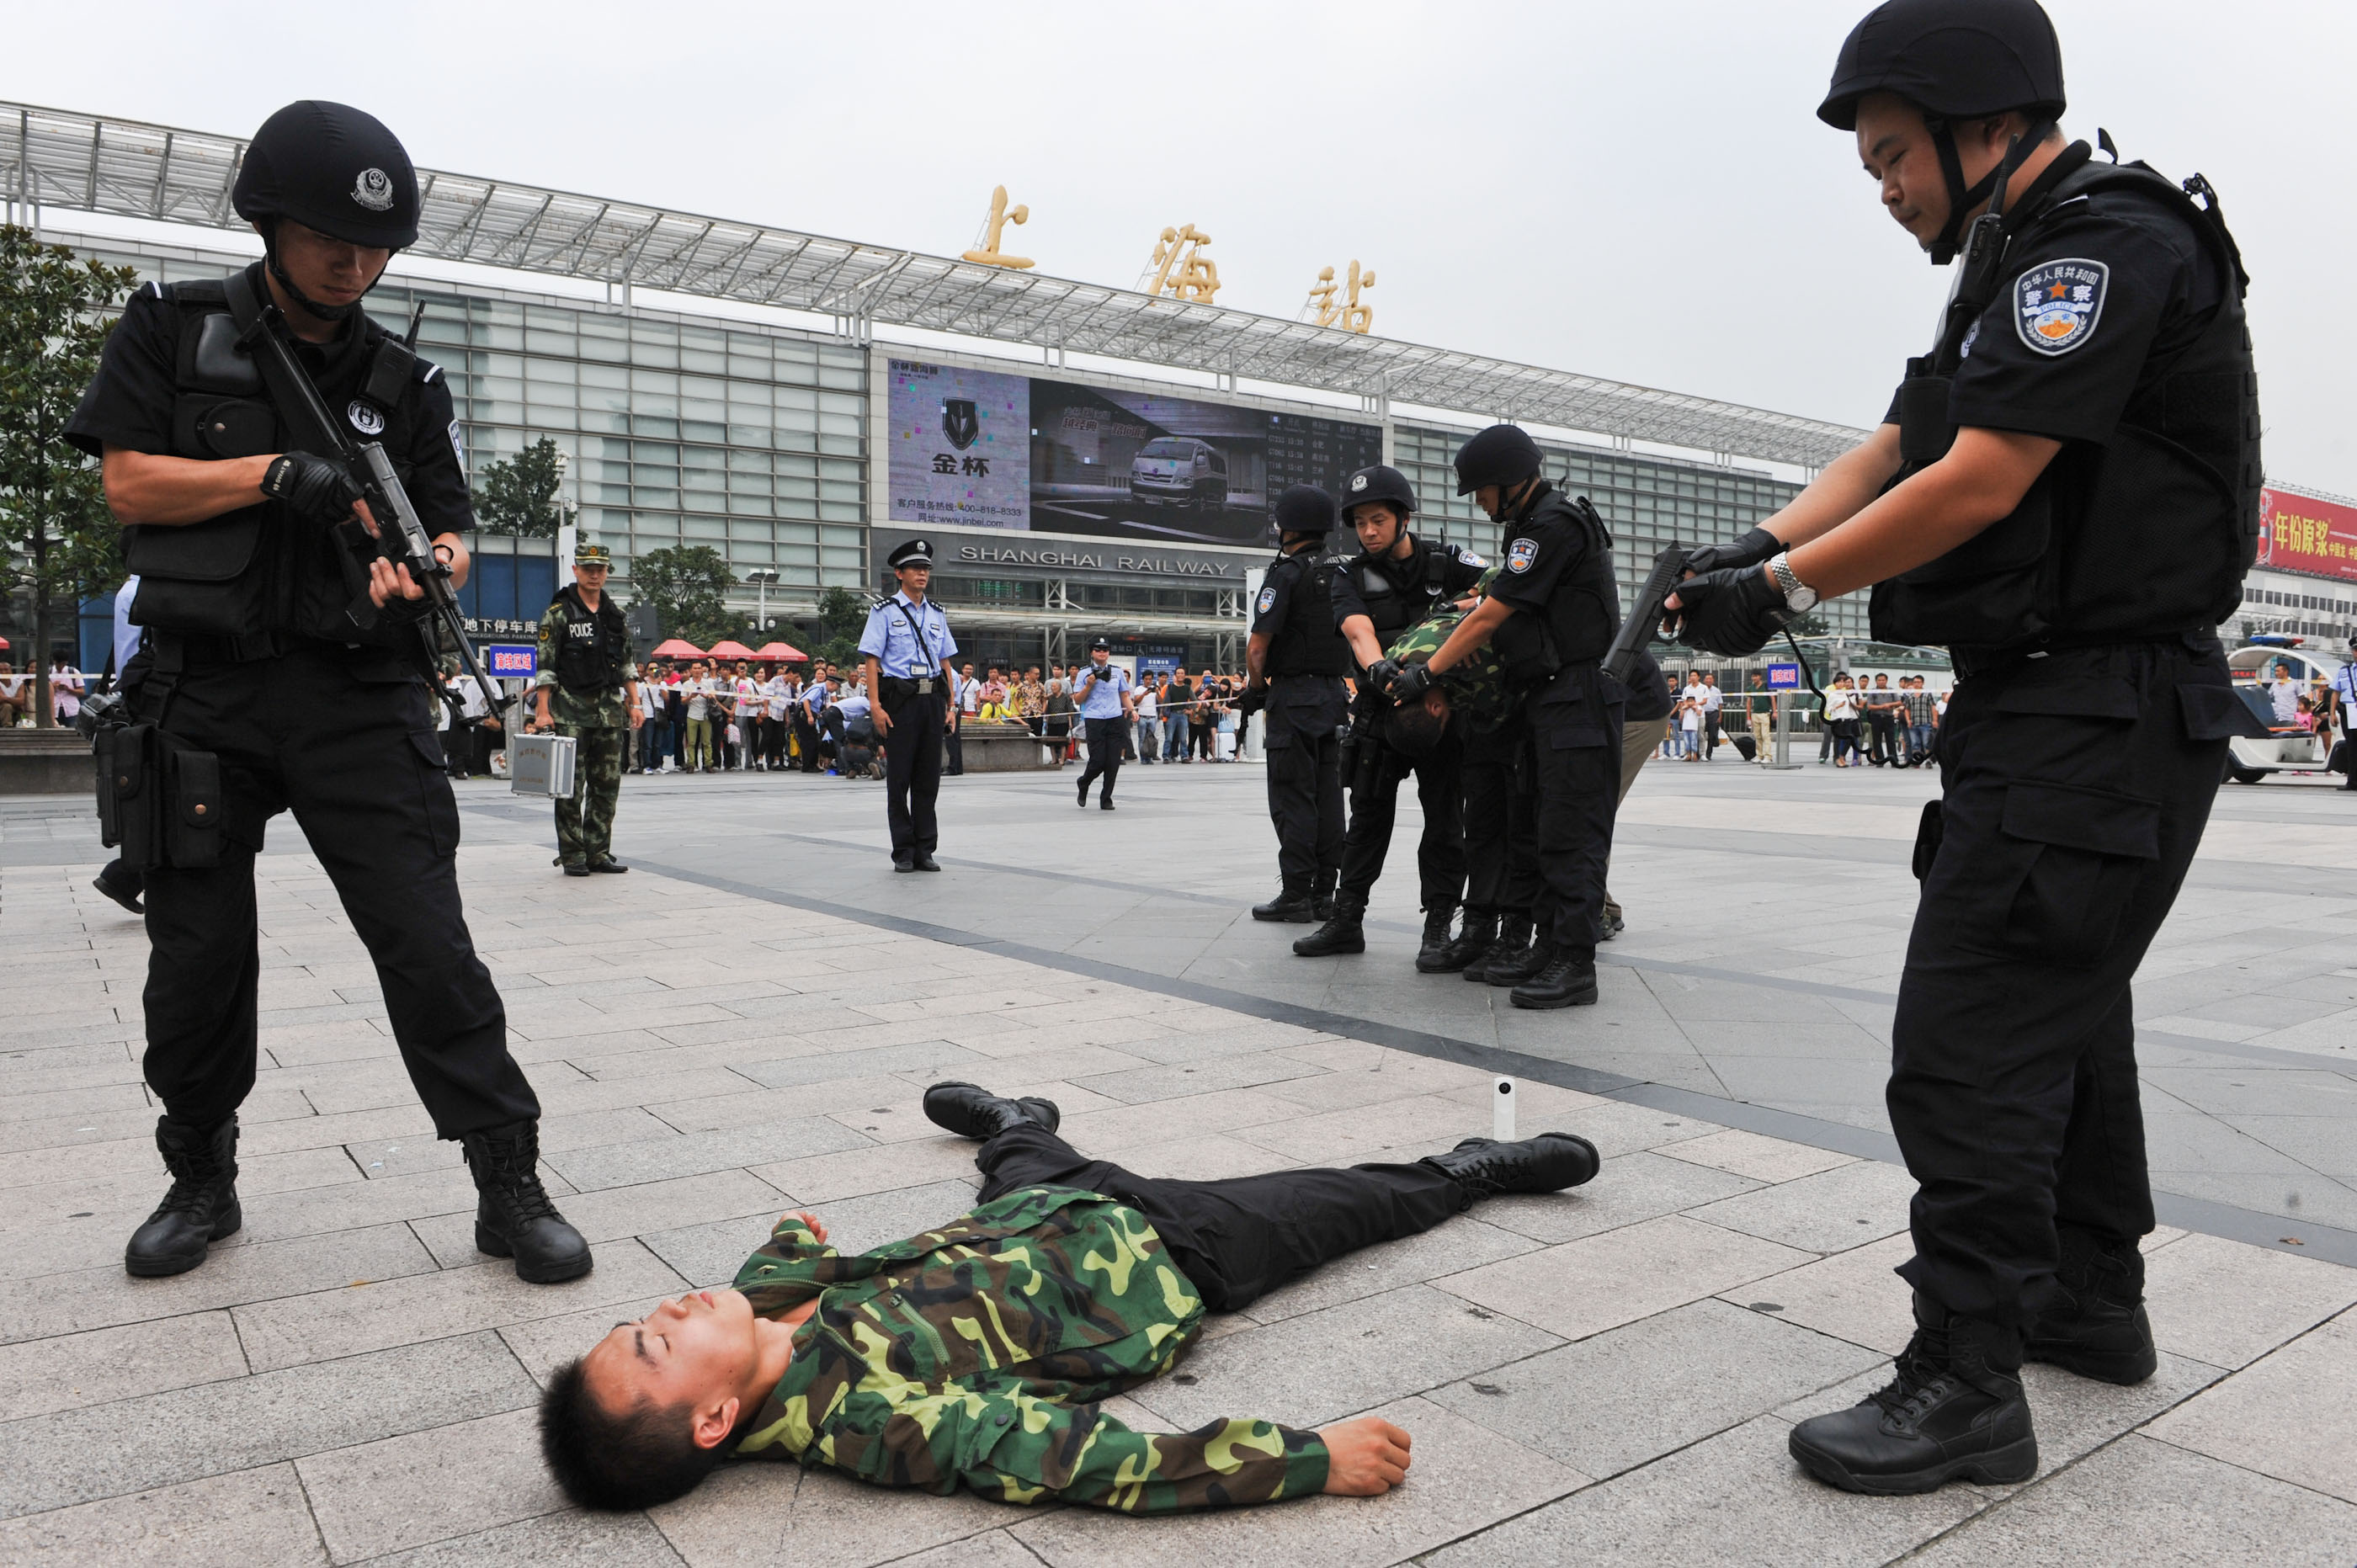 本市各警种昨在铁路上海站开展联合反恐演习